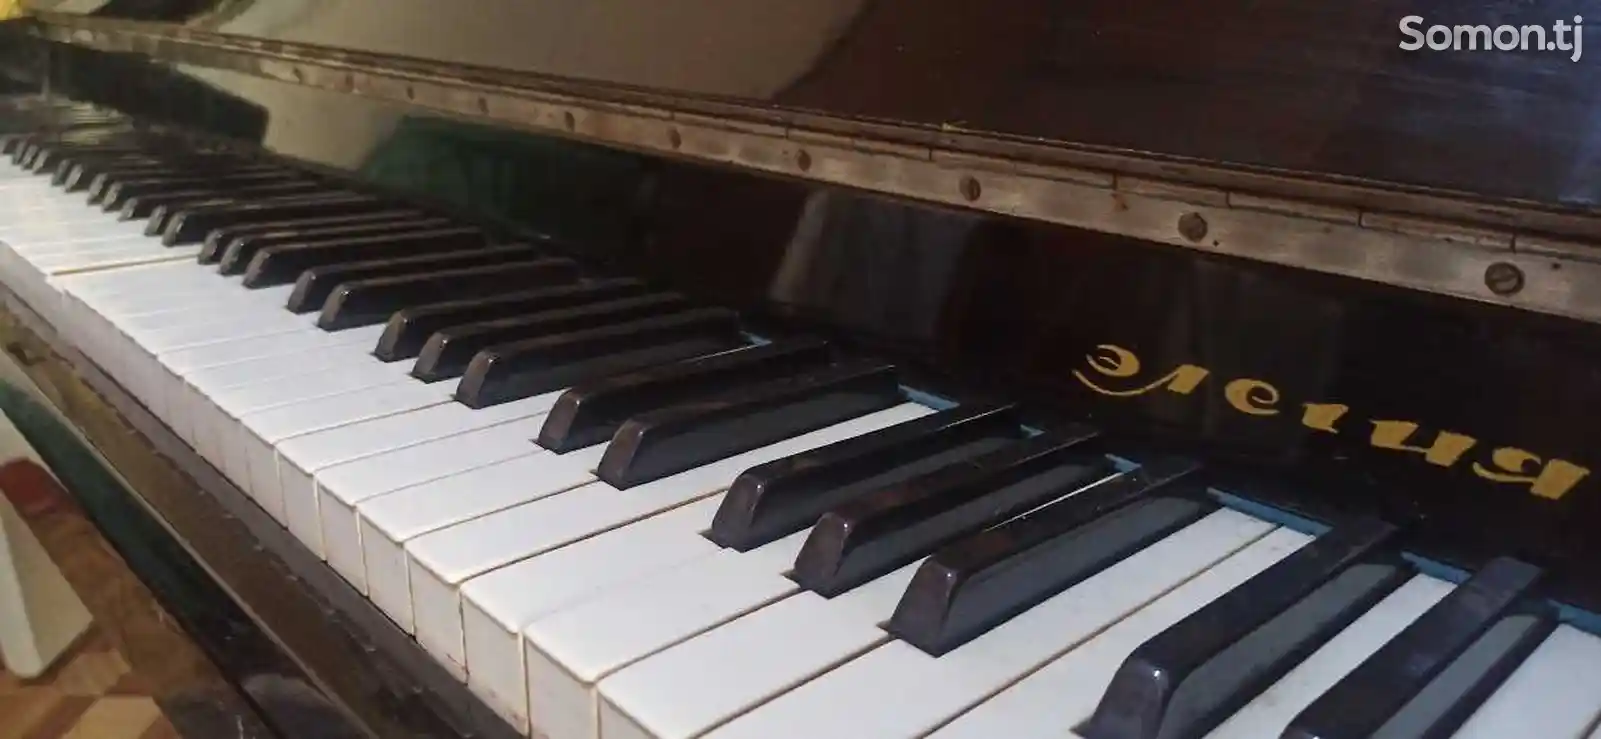 Пианино Элегия-2